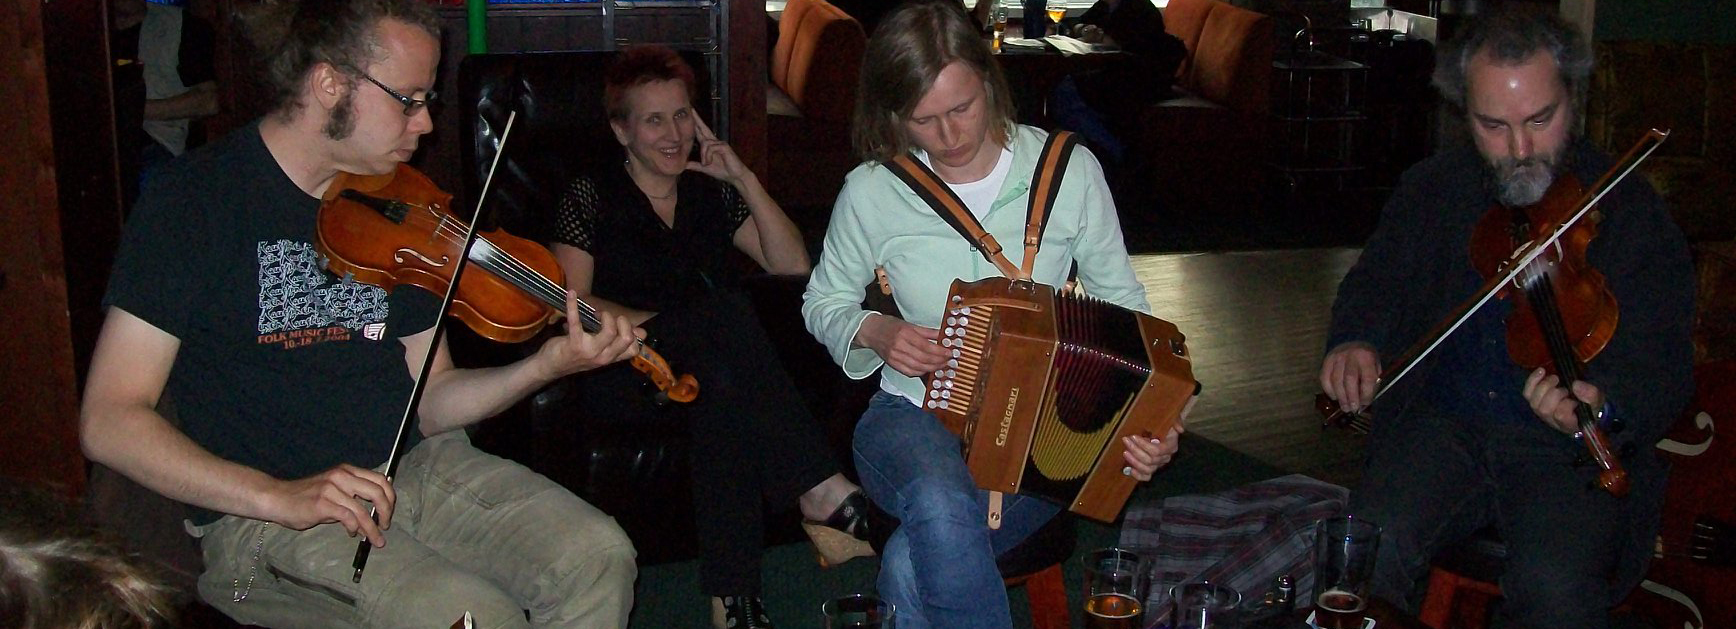 Old Anchor Inn jam in Helsinki-2009